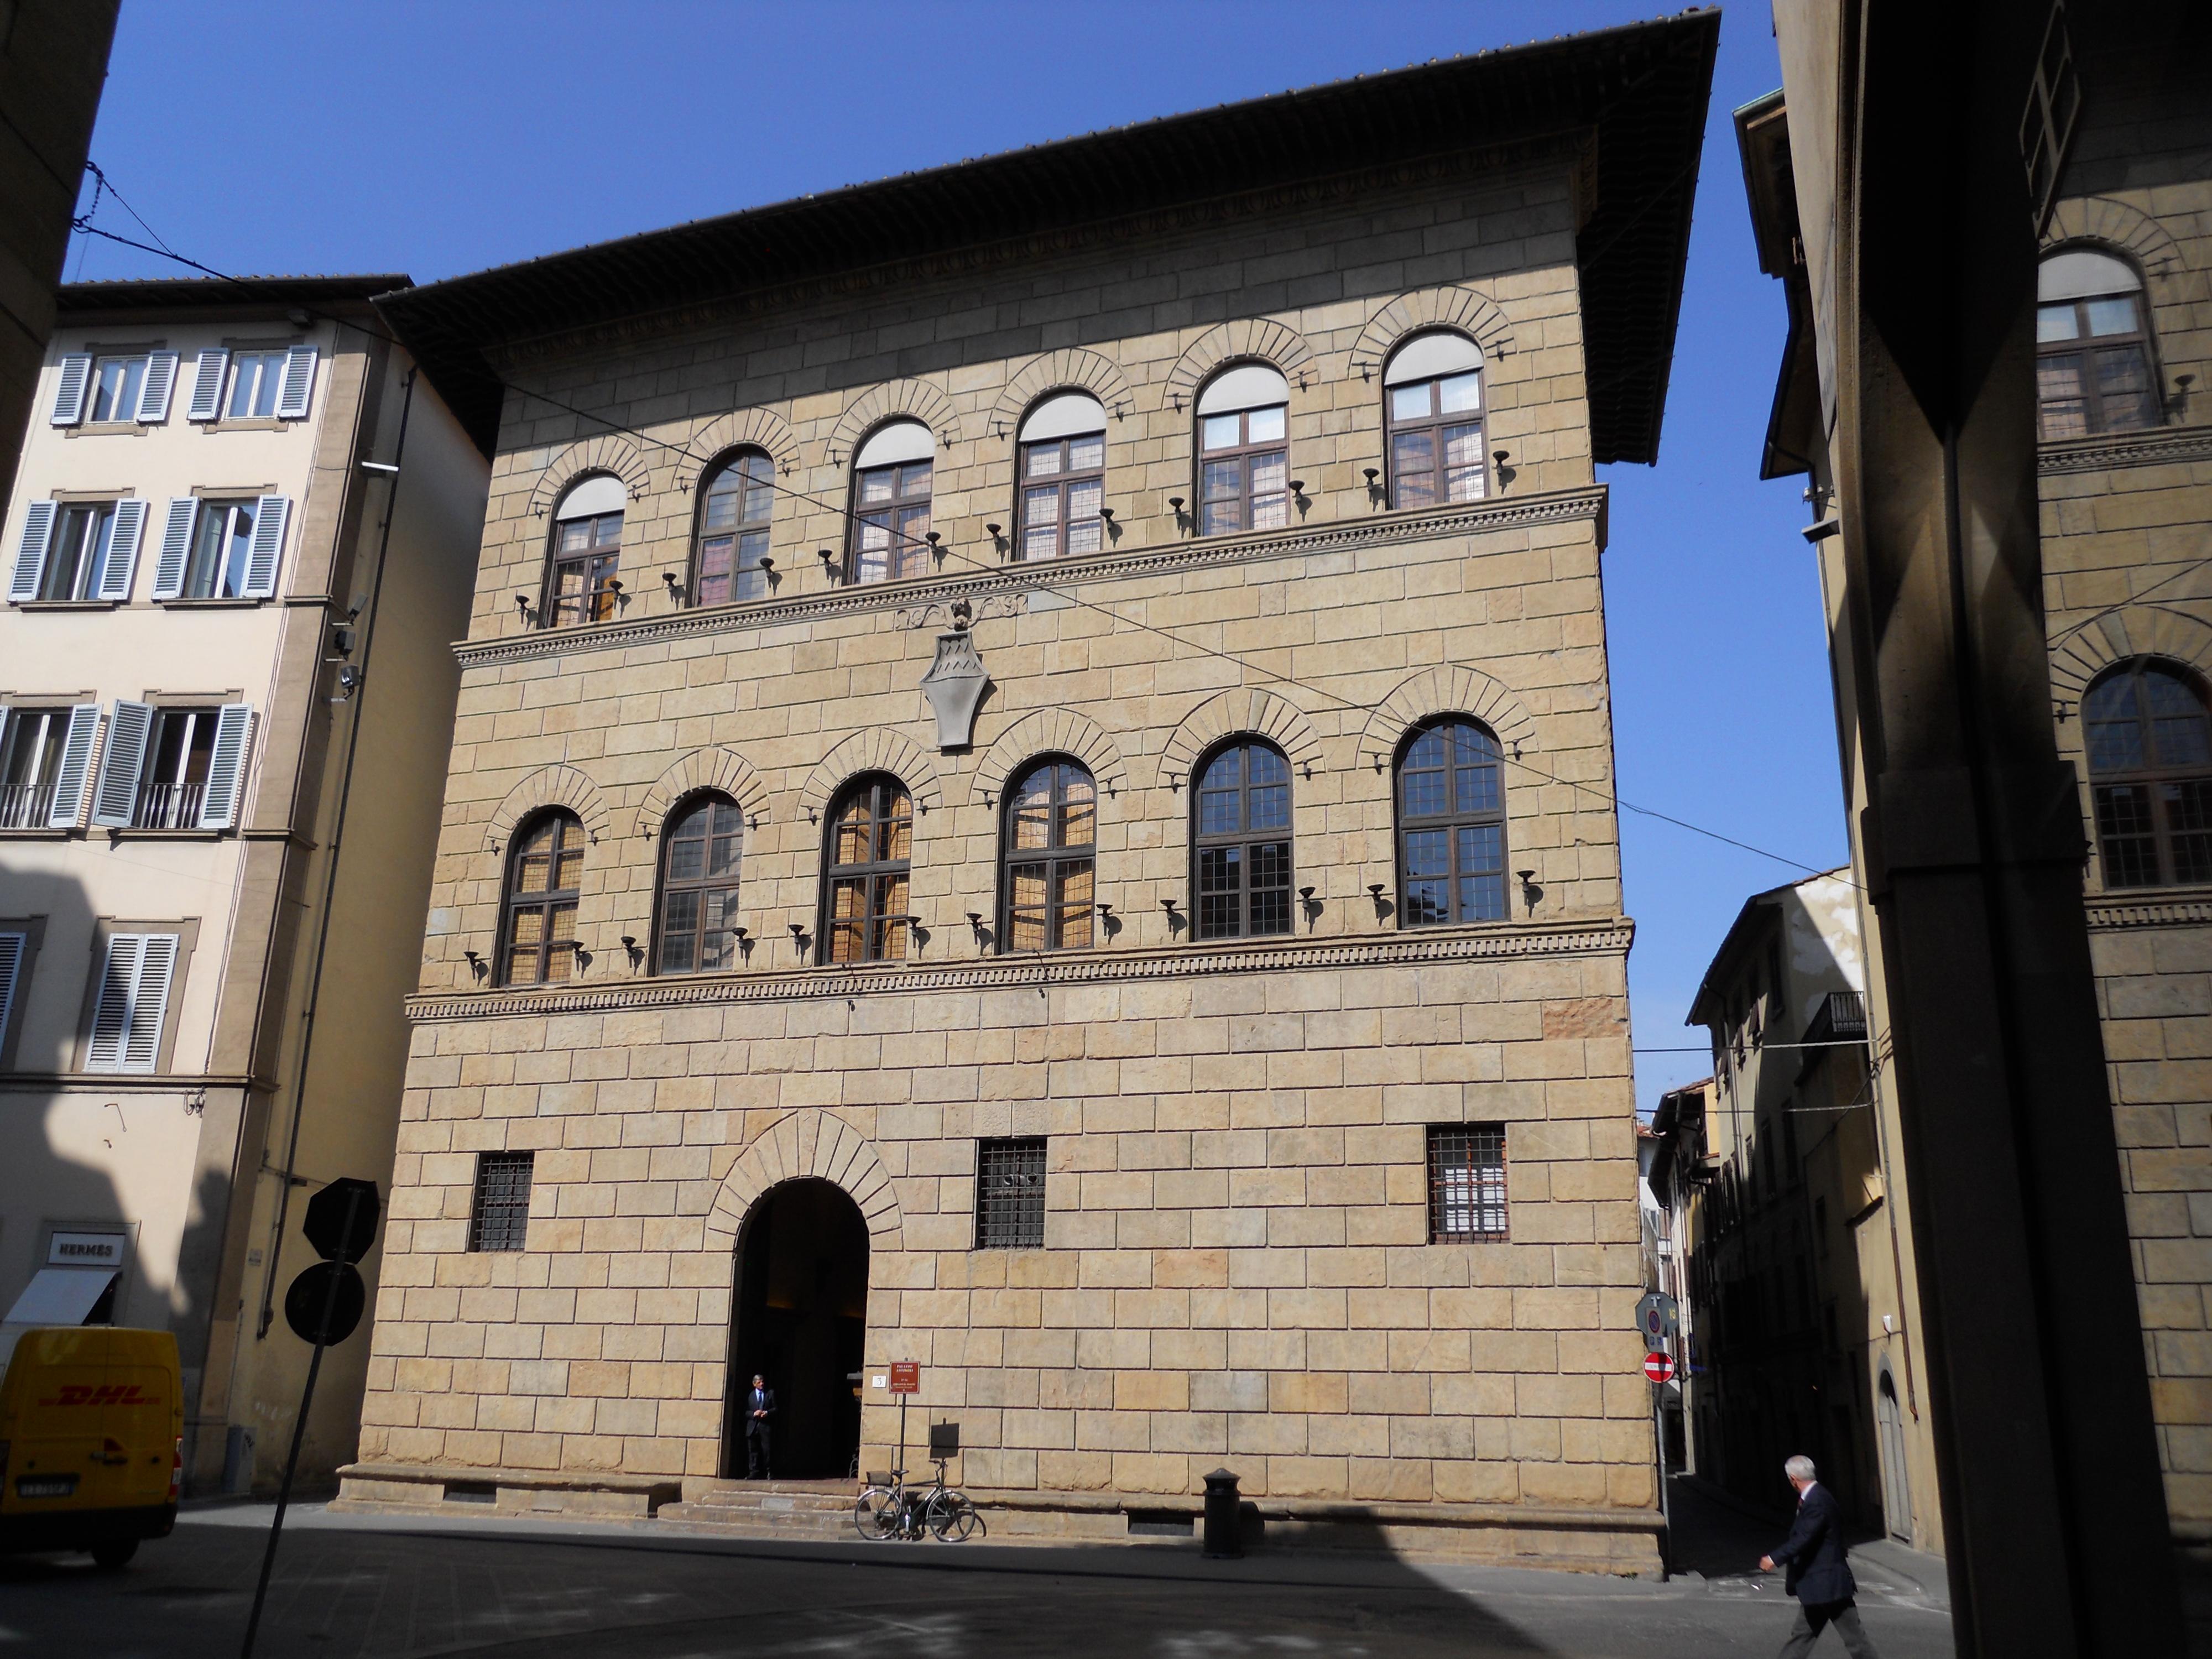 Palazzo Antinori